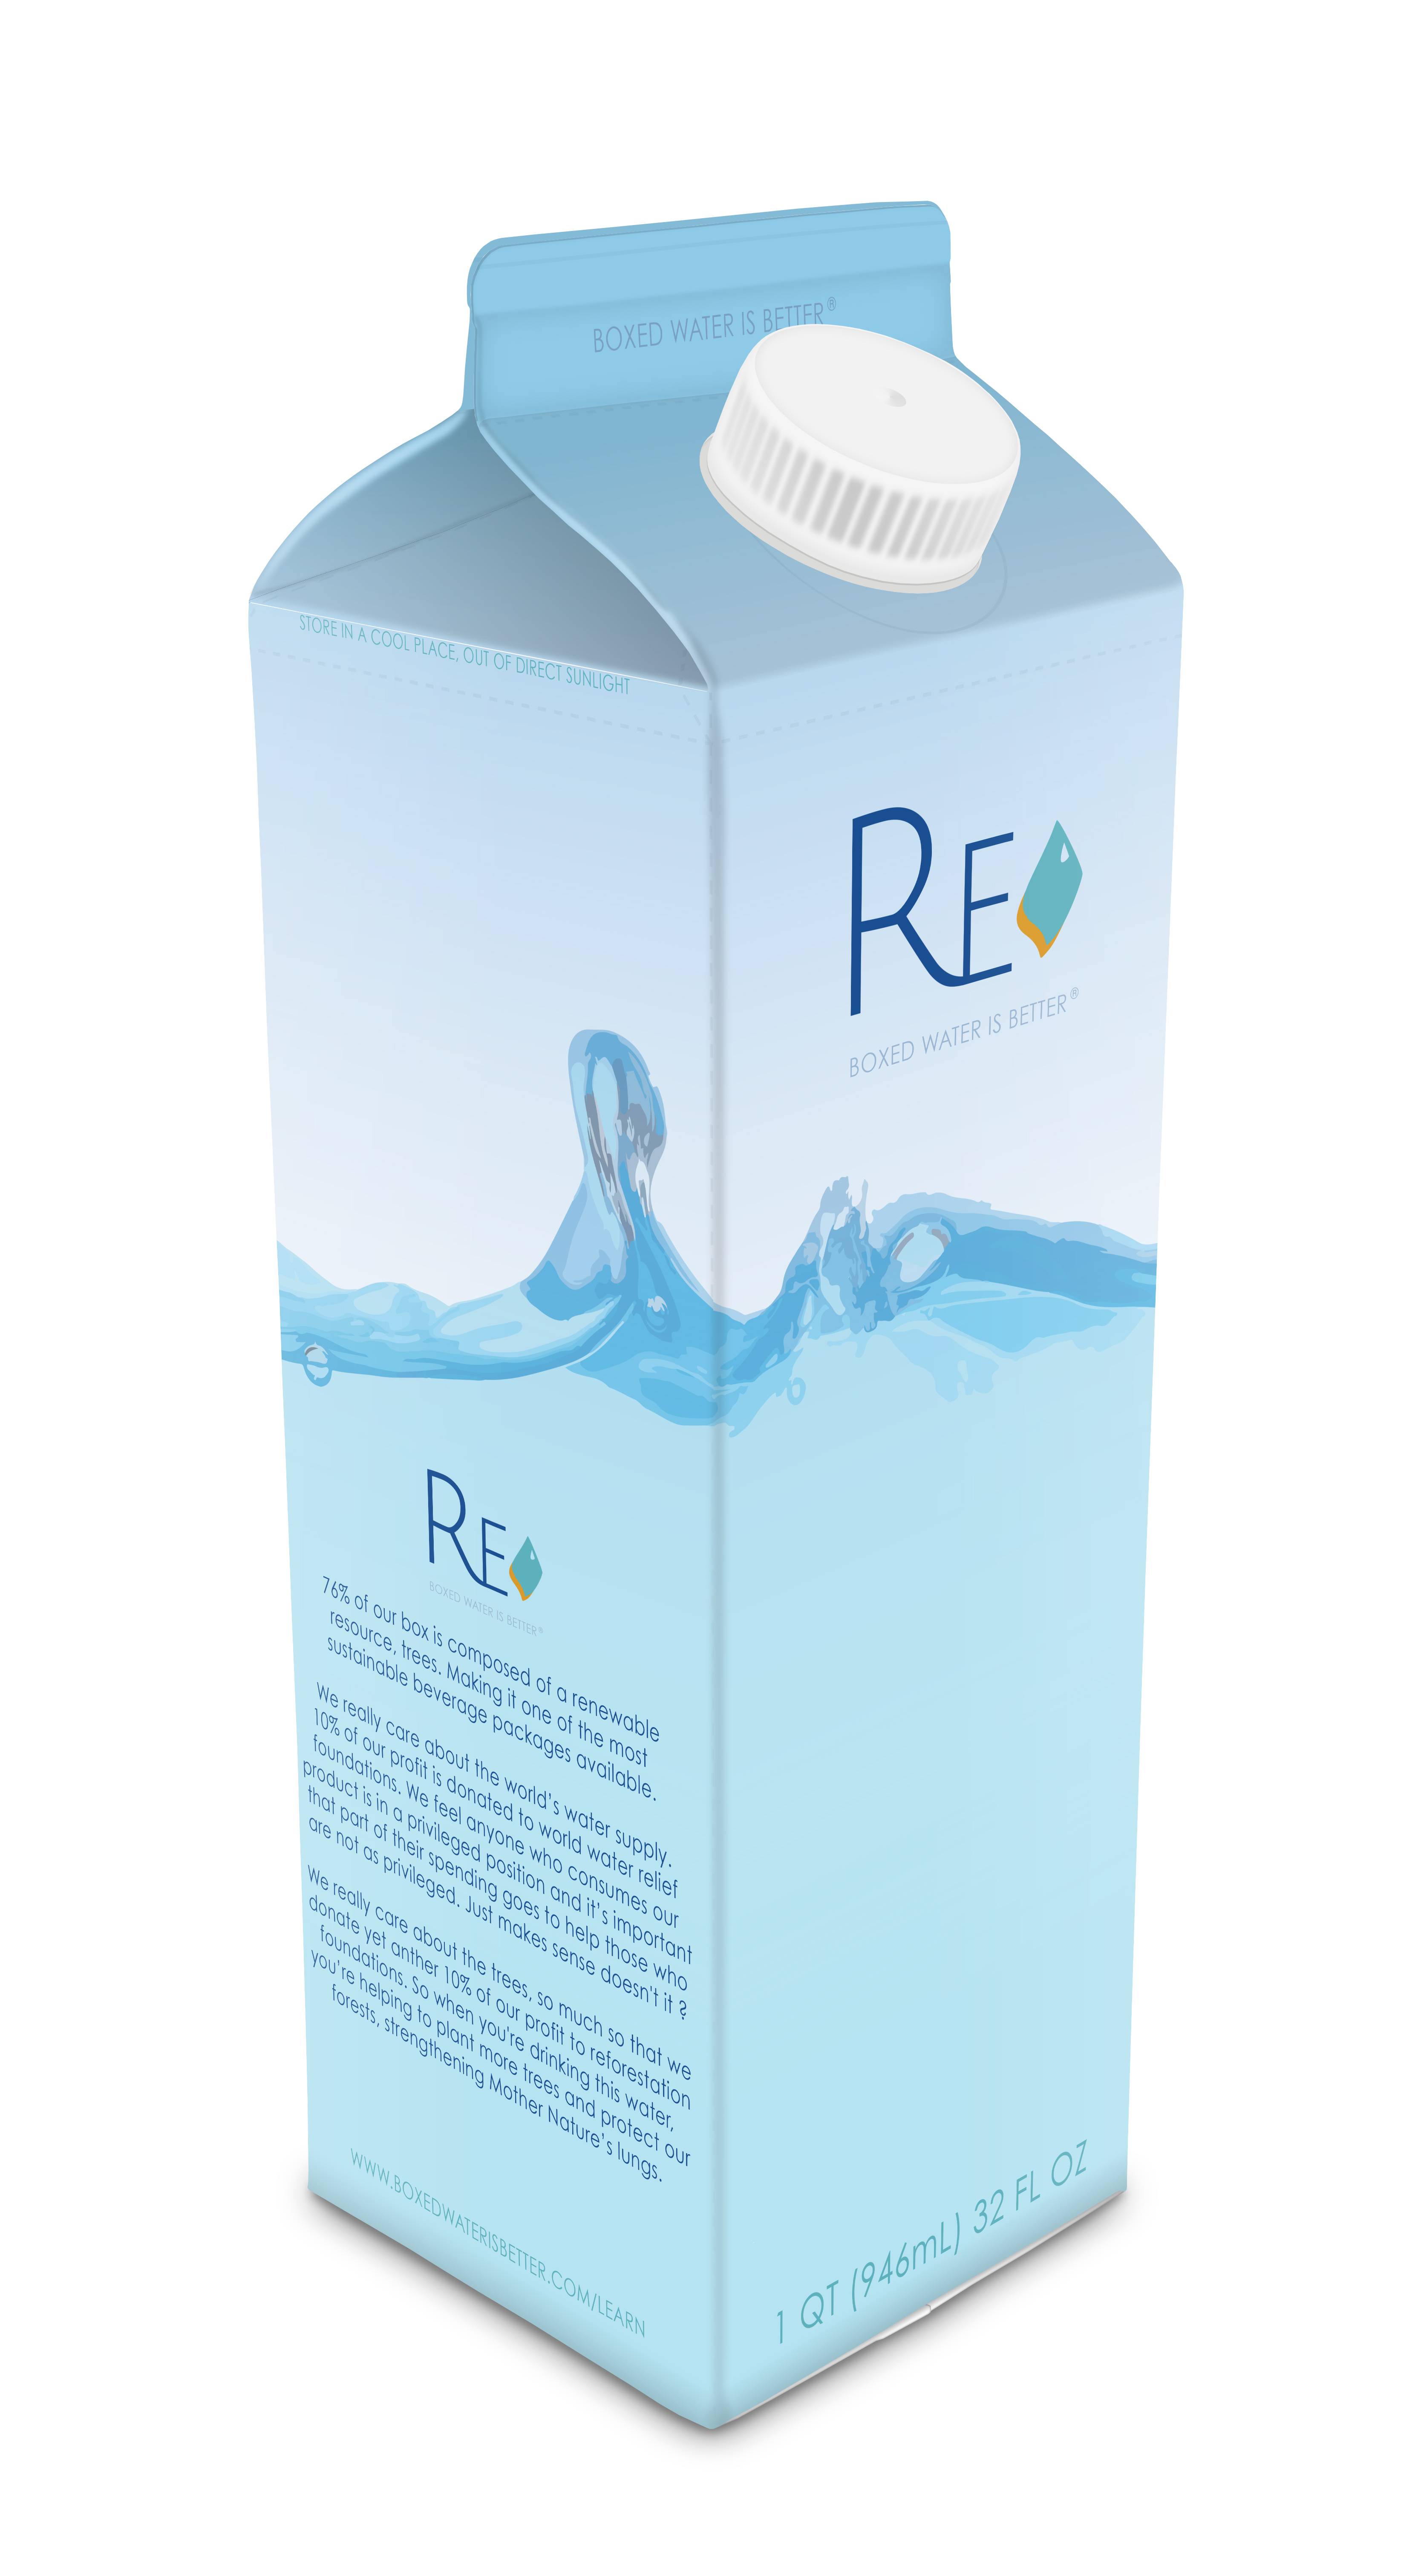 reboxed water